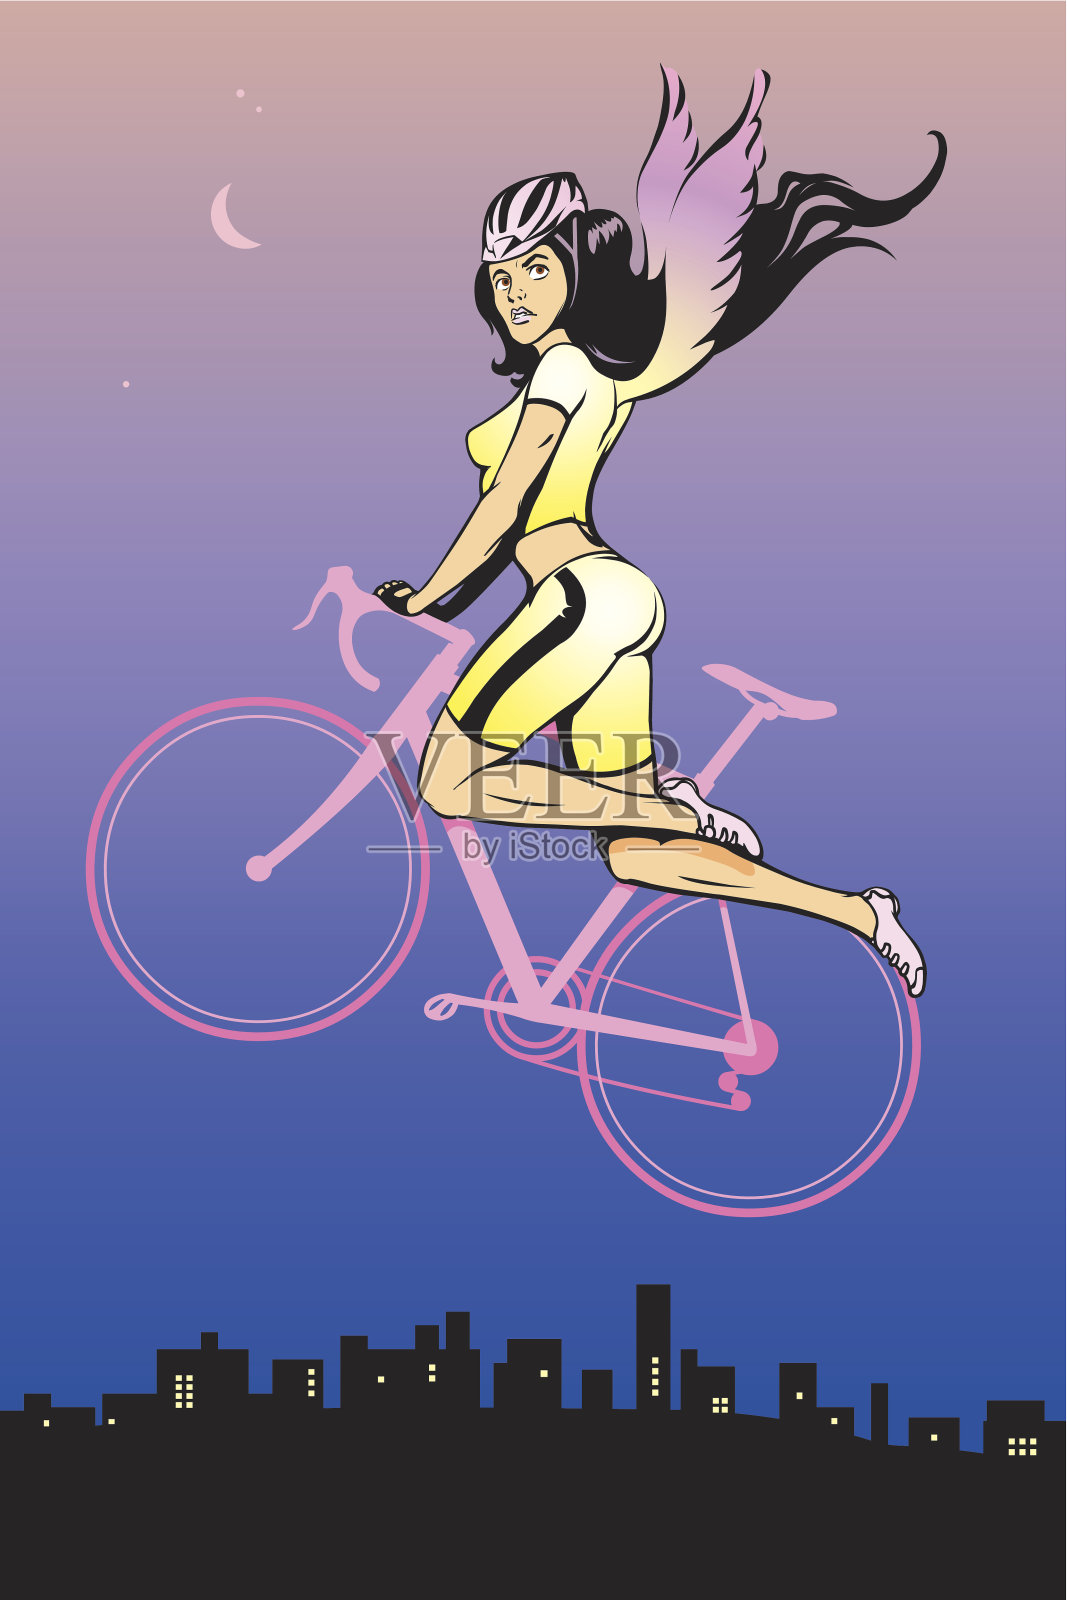 自行车上的女孩插画图片素材